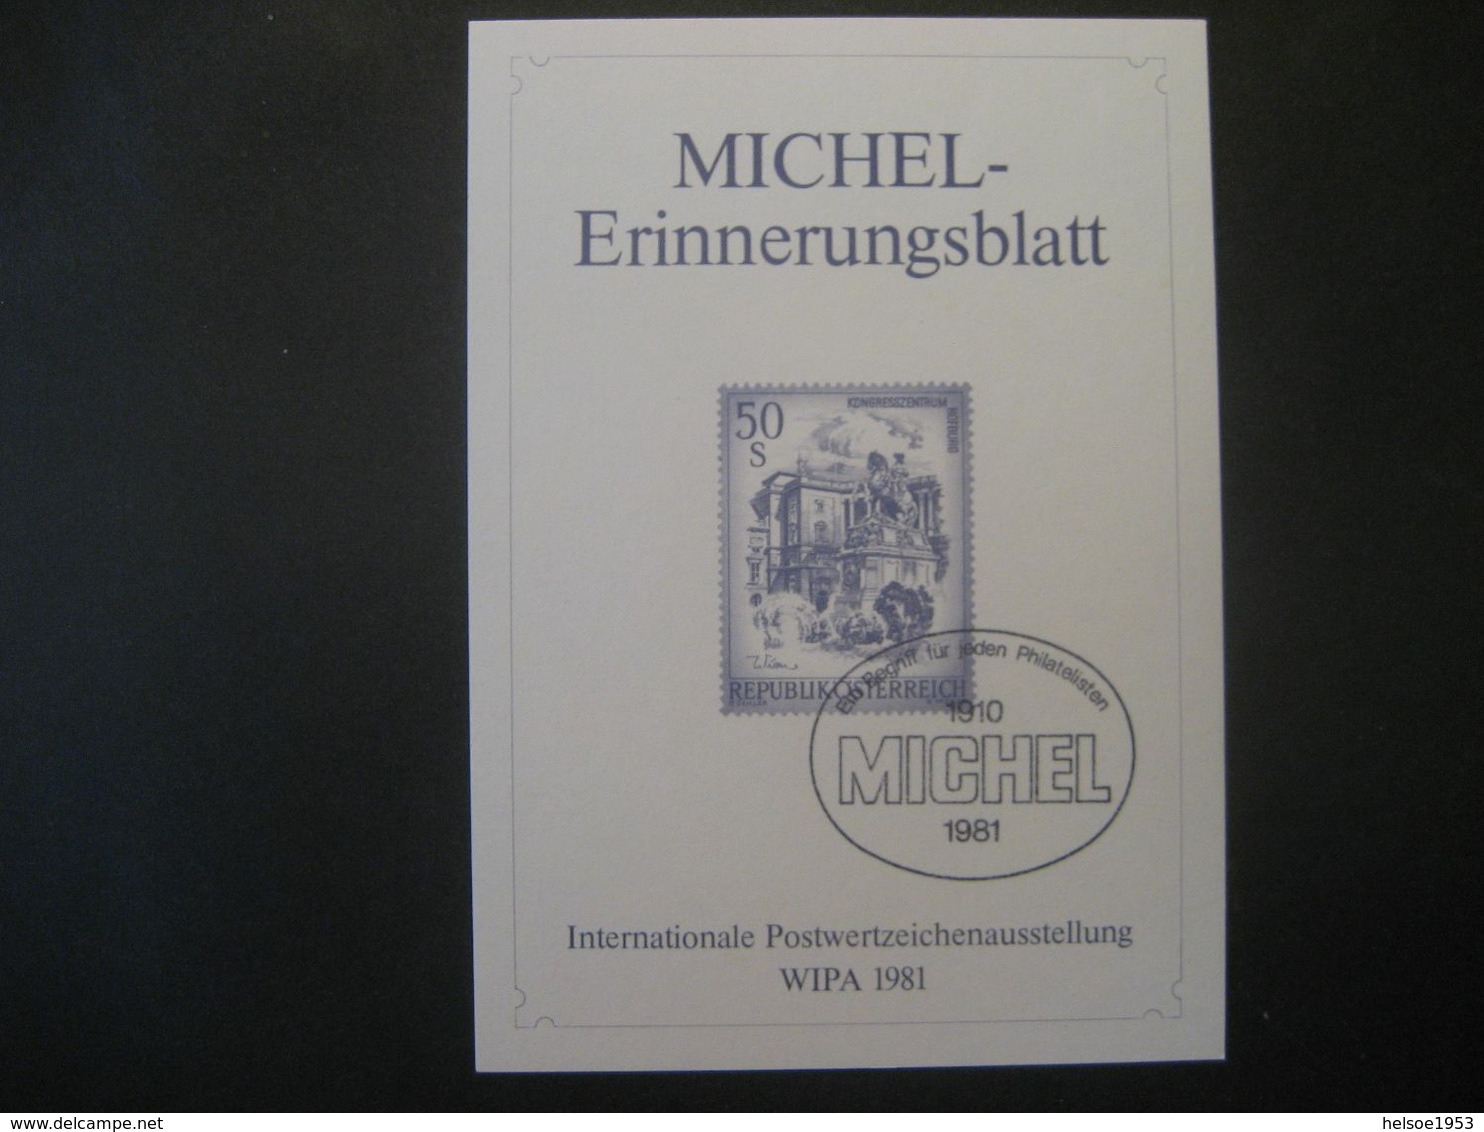 Österreich 1981- WIPA 1981 Michel-Erinnerungsblatt - Proofs & Reprints